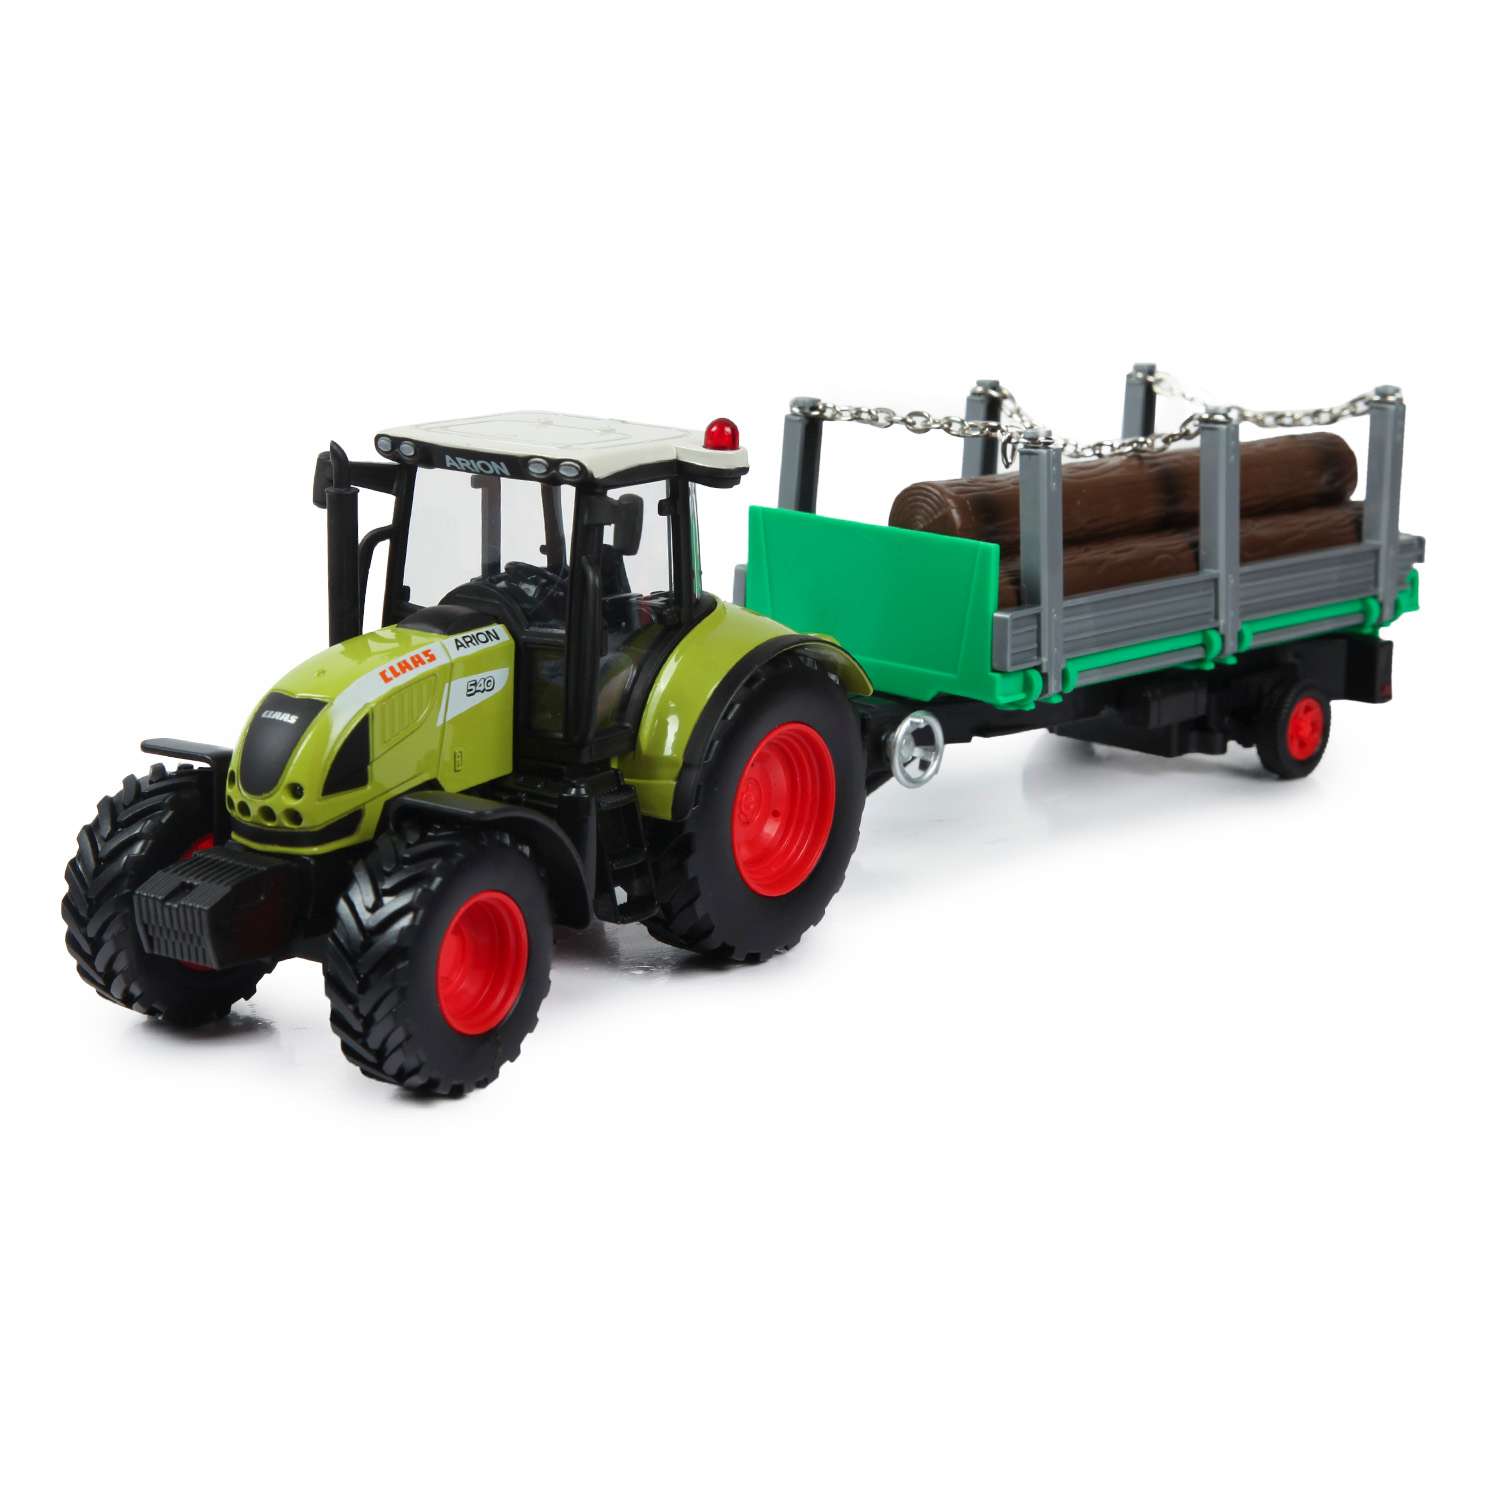 Машинка Mobicaro 1:32 Claas Tractor с прицепом 144016 Mobicaro 144016 - фото 1